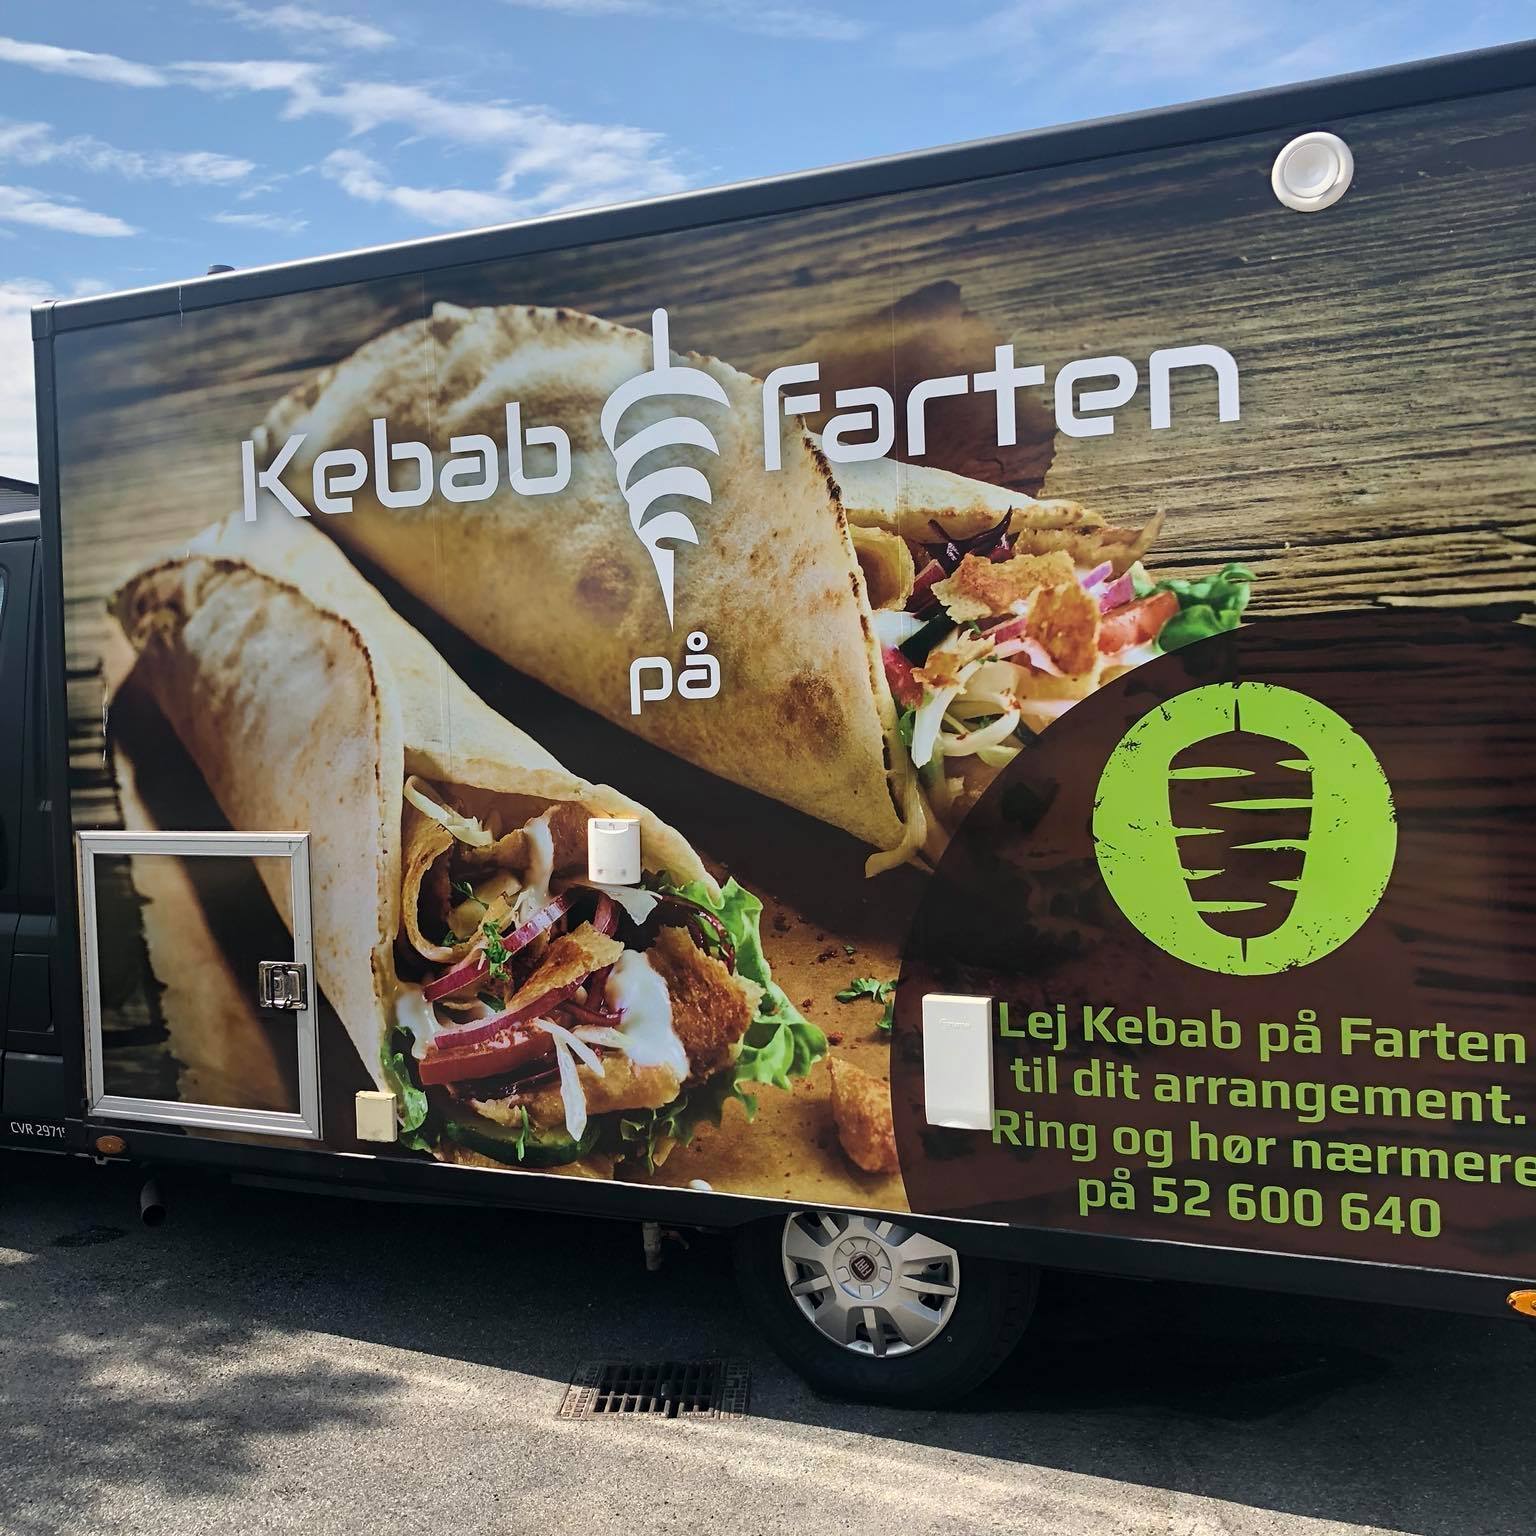 Kebab på farten - Lej en pølsevogn, eller foodtruck i Ballerup